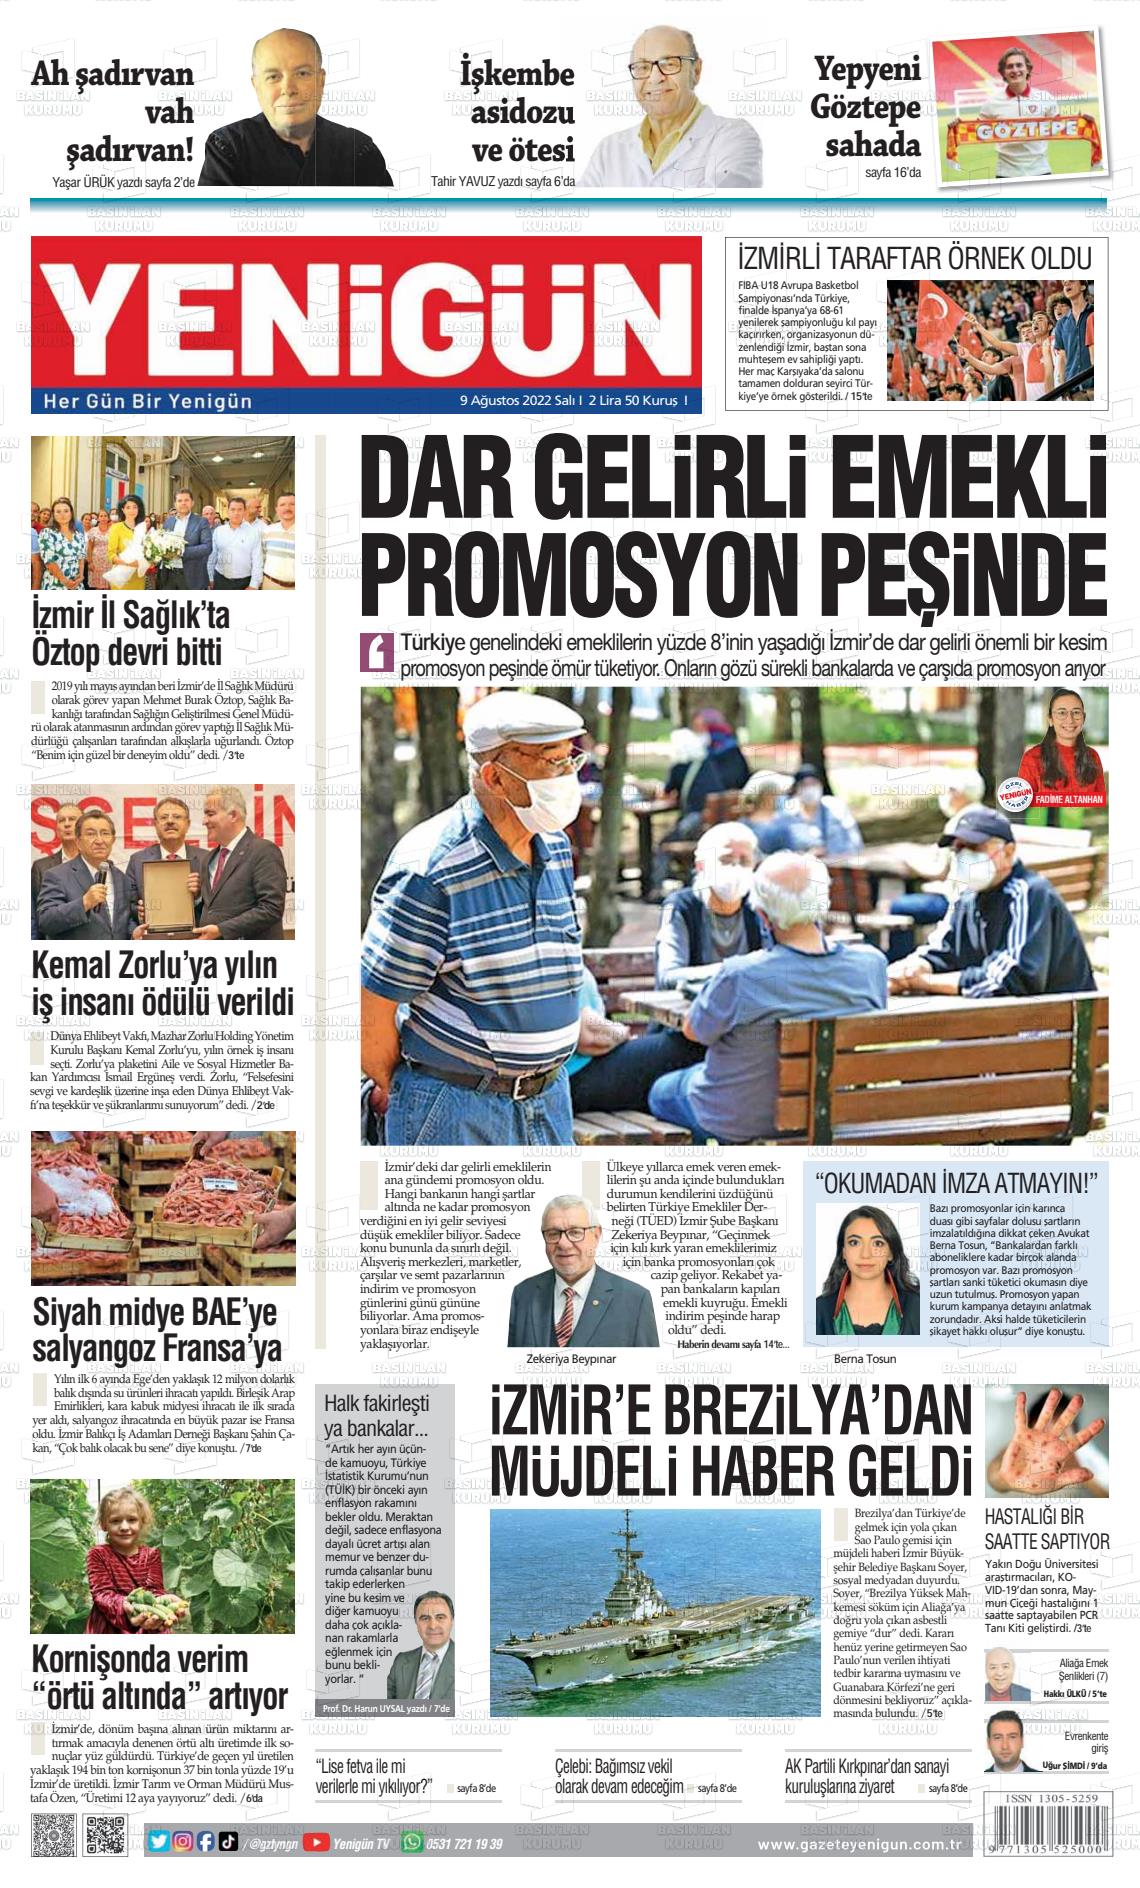 09 Ağustos 2022 Yeni Gün Gazete Manşeti